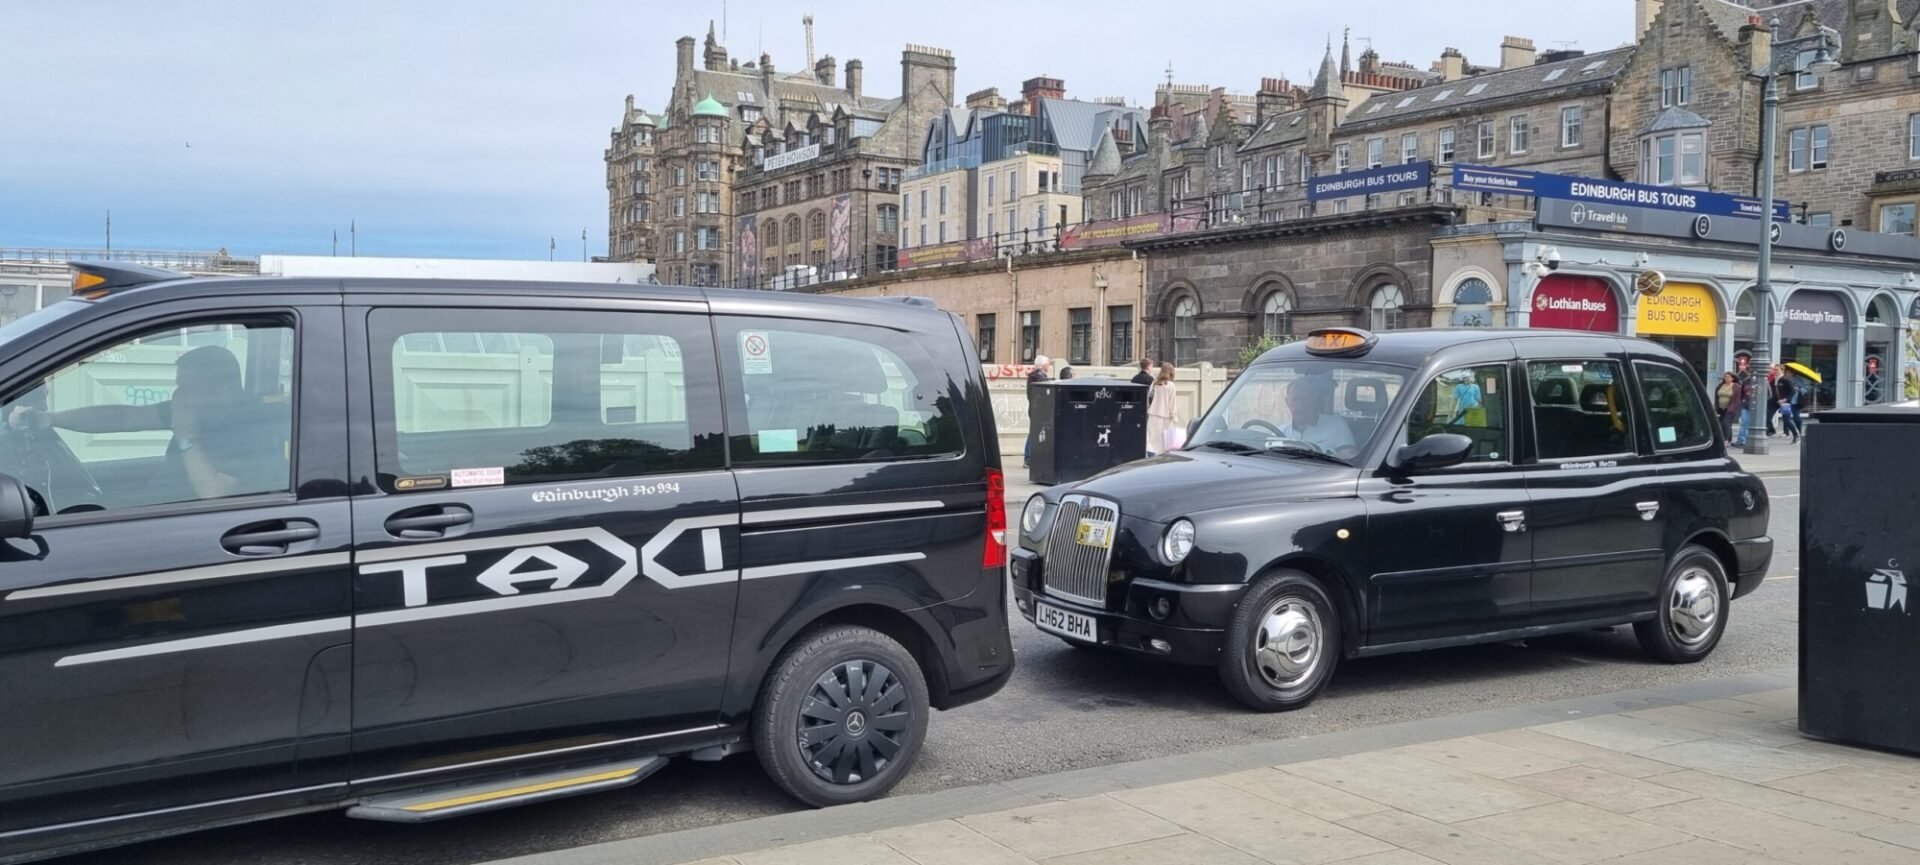 Edinburgh Taxis